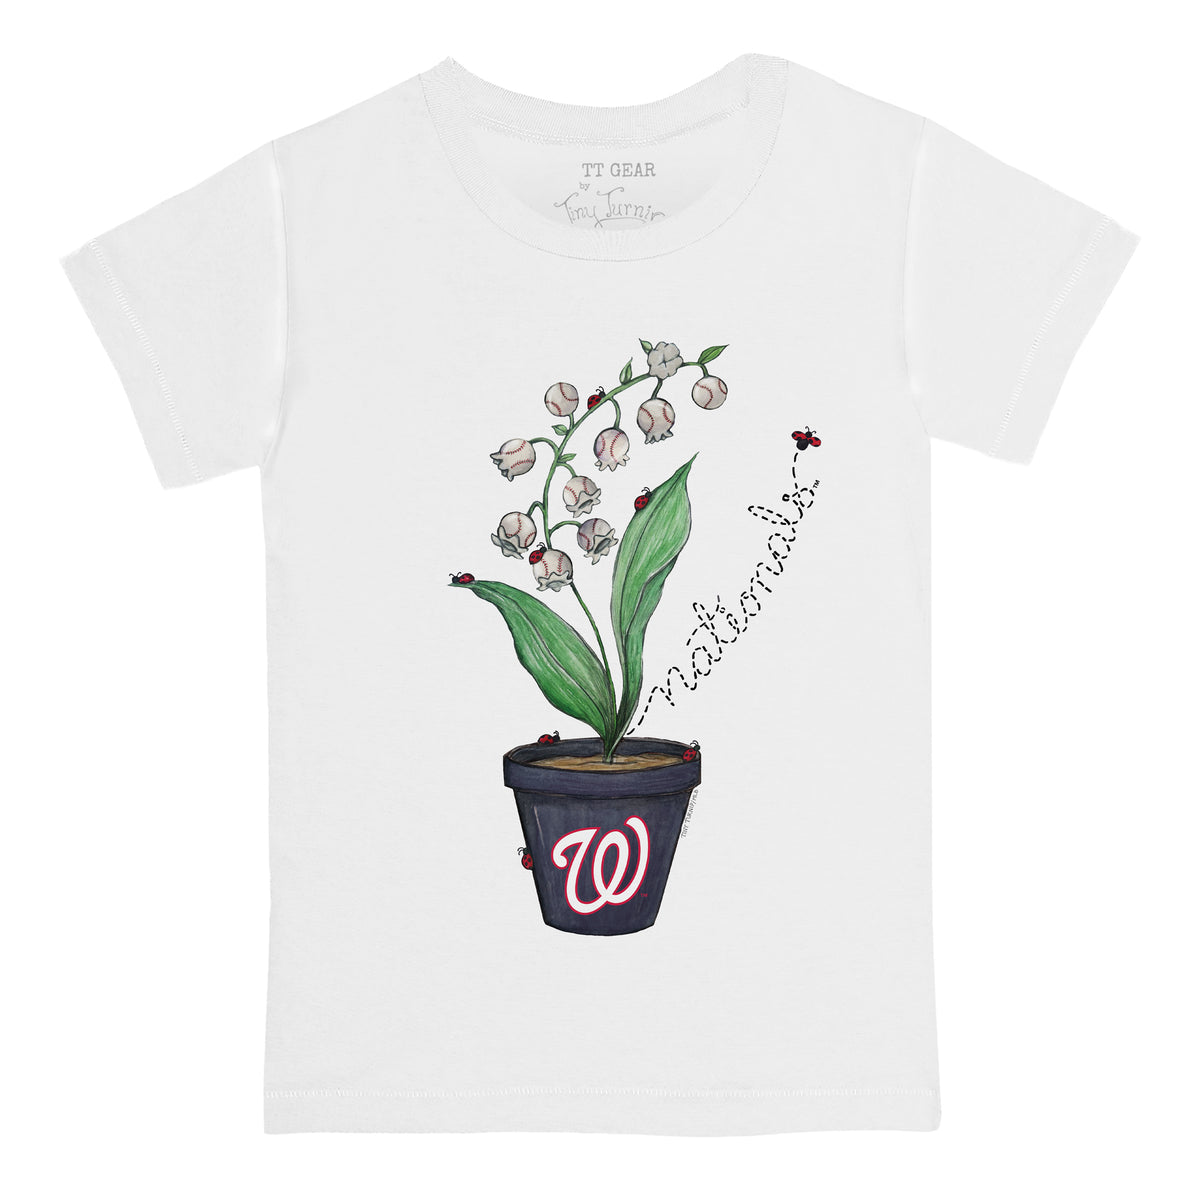 Washington Nationals Ladybug Tee Shirt